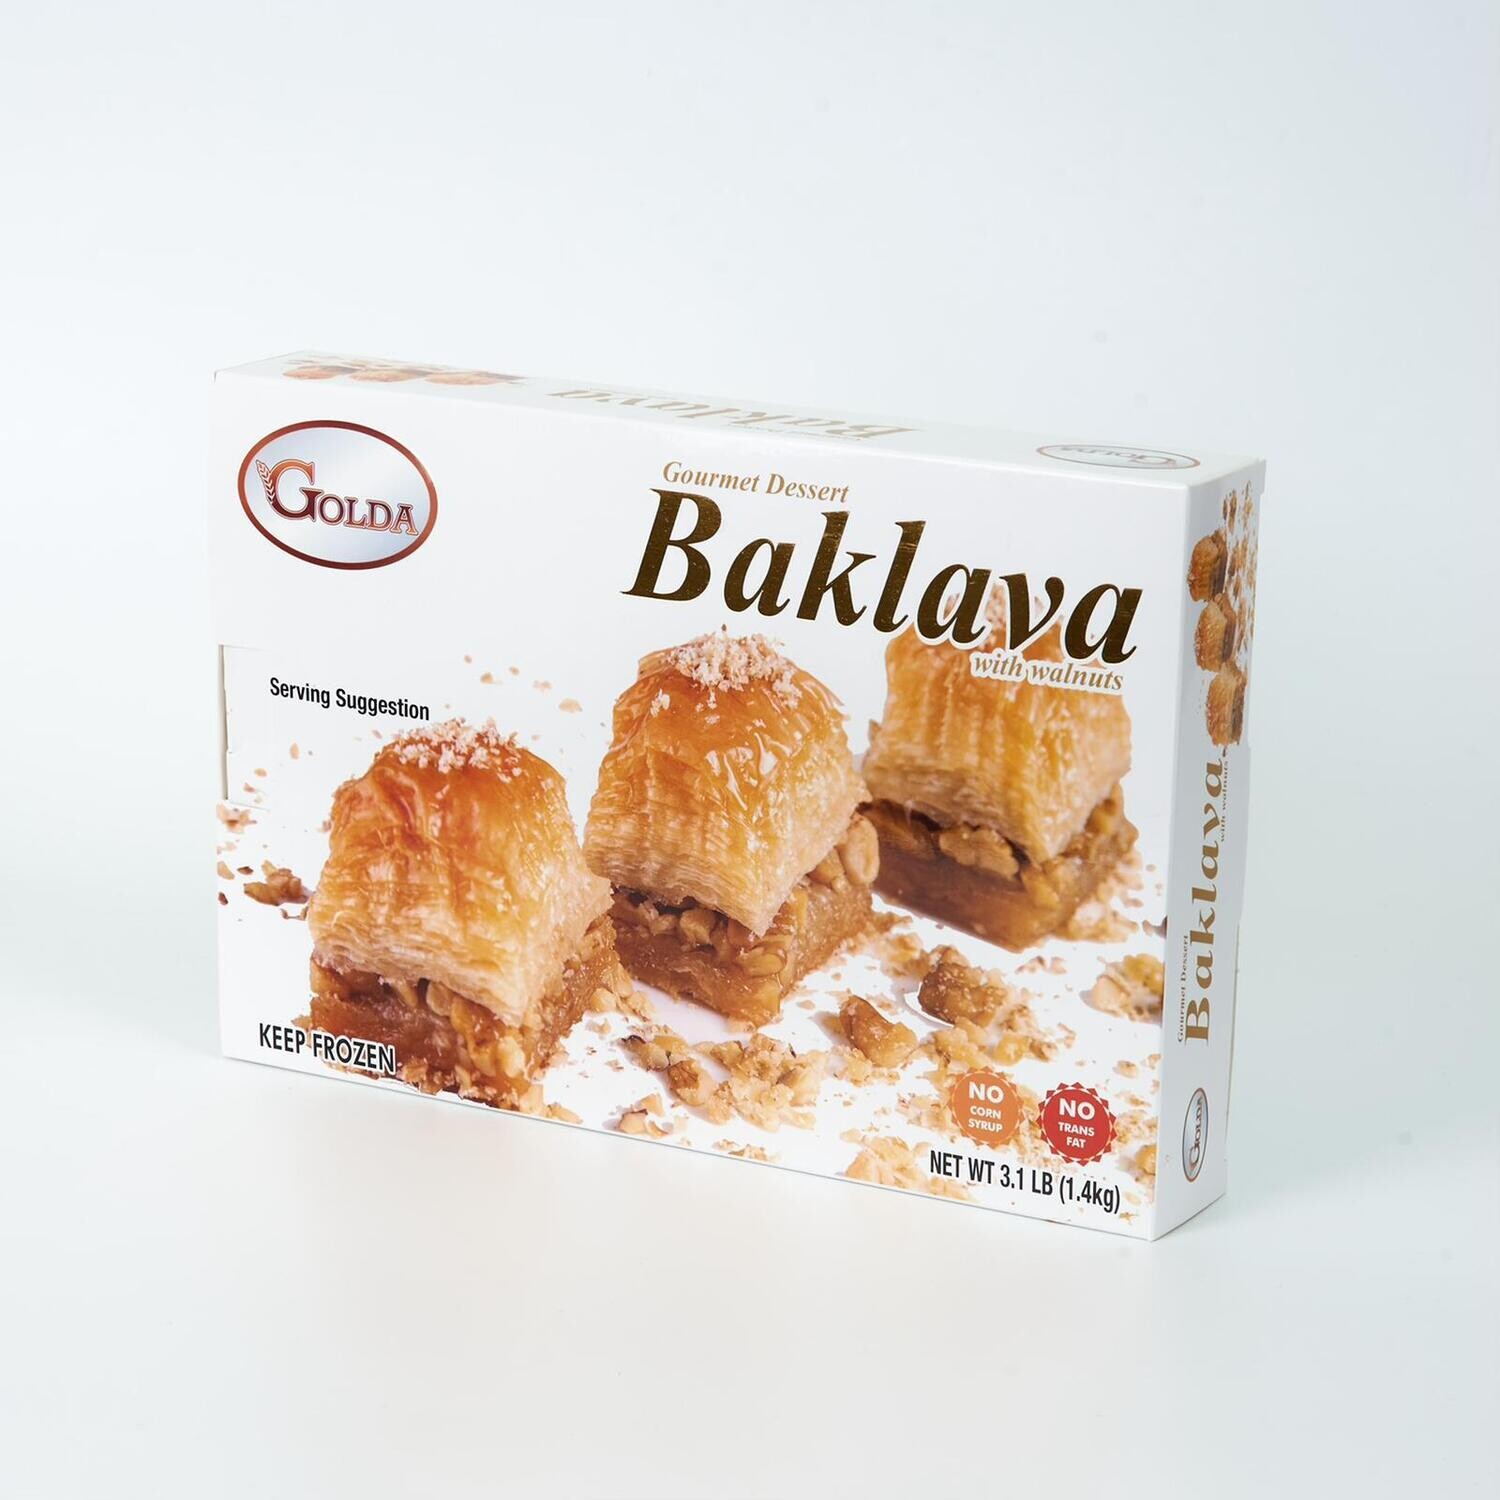 GOLDA Baklava with Walnut 1 lb